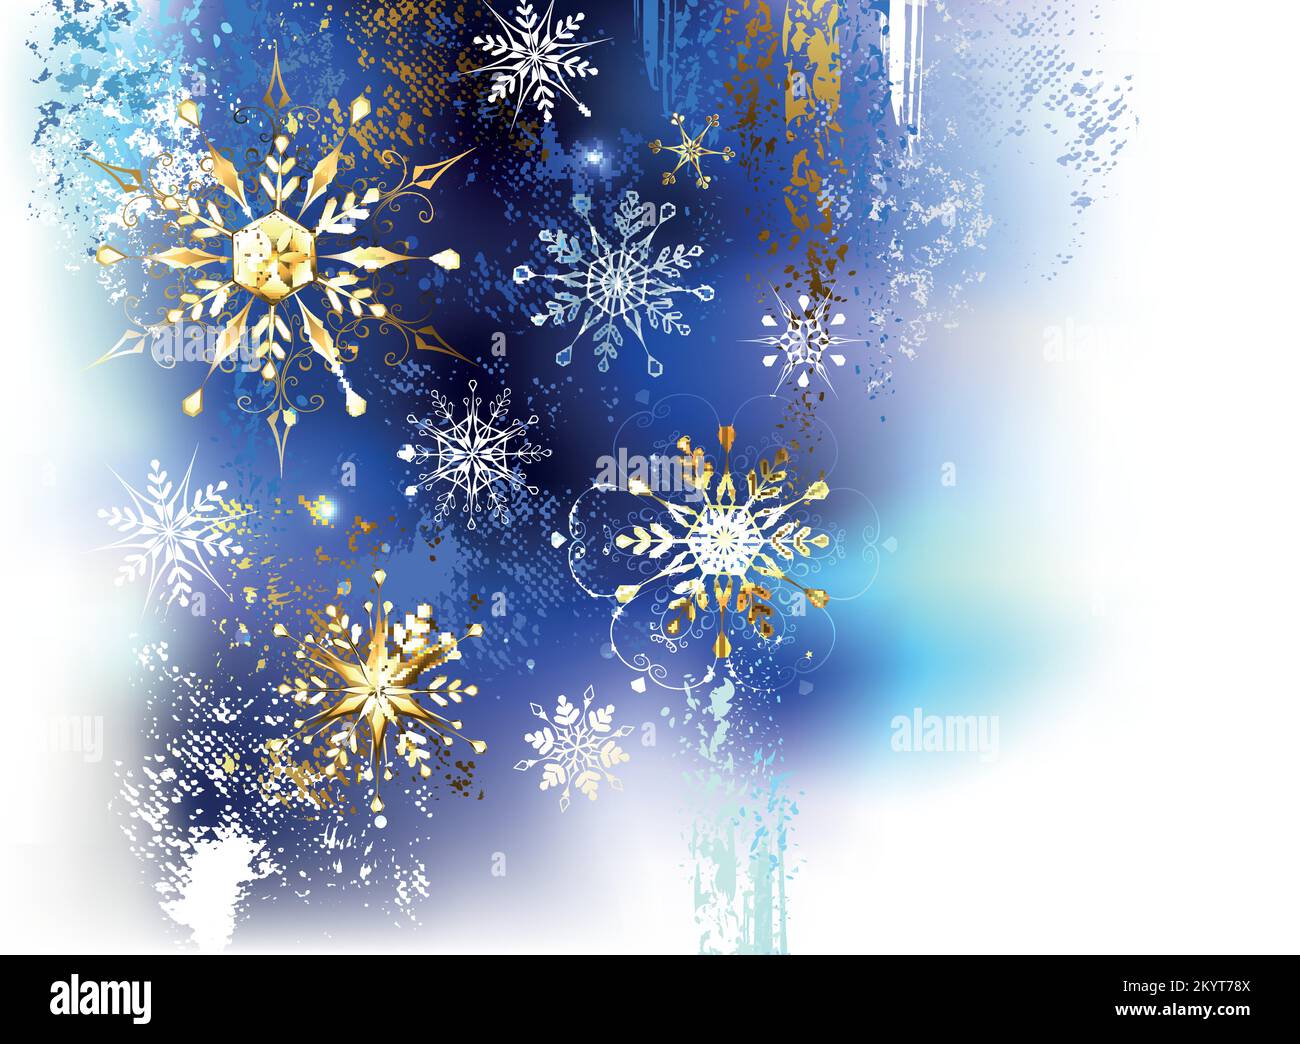 Weihnachten, Winterhintergrund, blau, weiß, goldene Farbe mit Gold, glänzend, schimmernde Schneeflocken. Goldene Schneeflocken. Stock Vektor